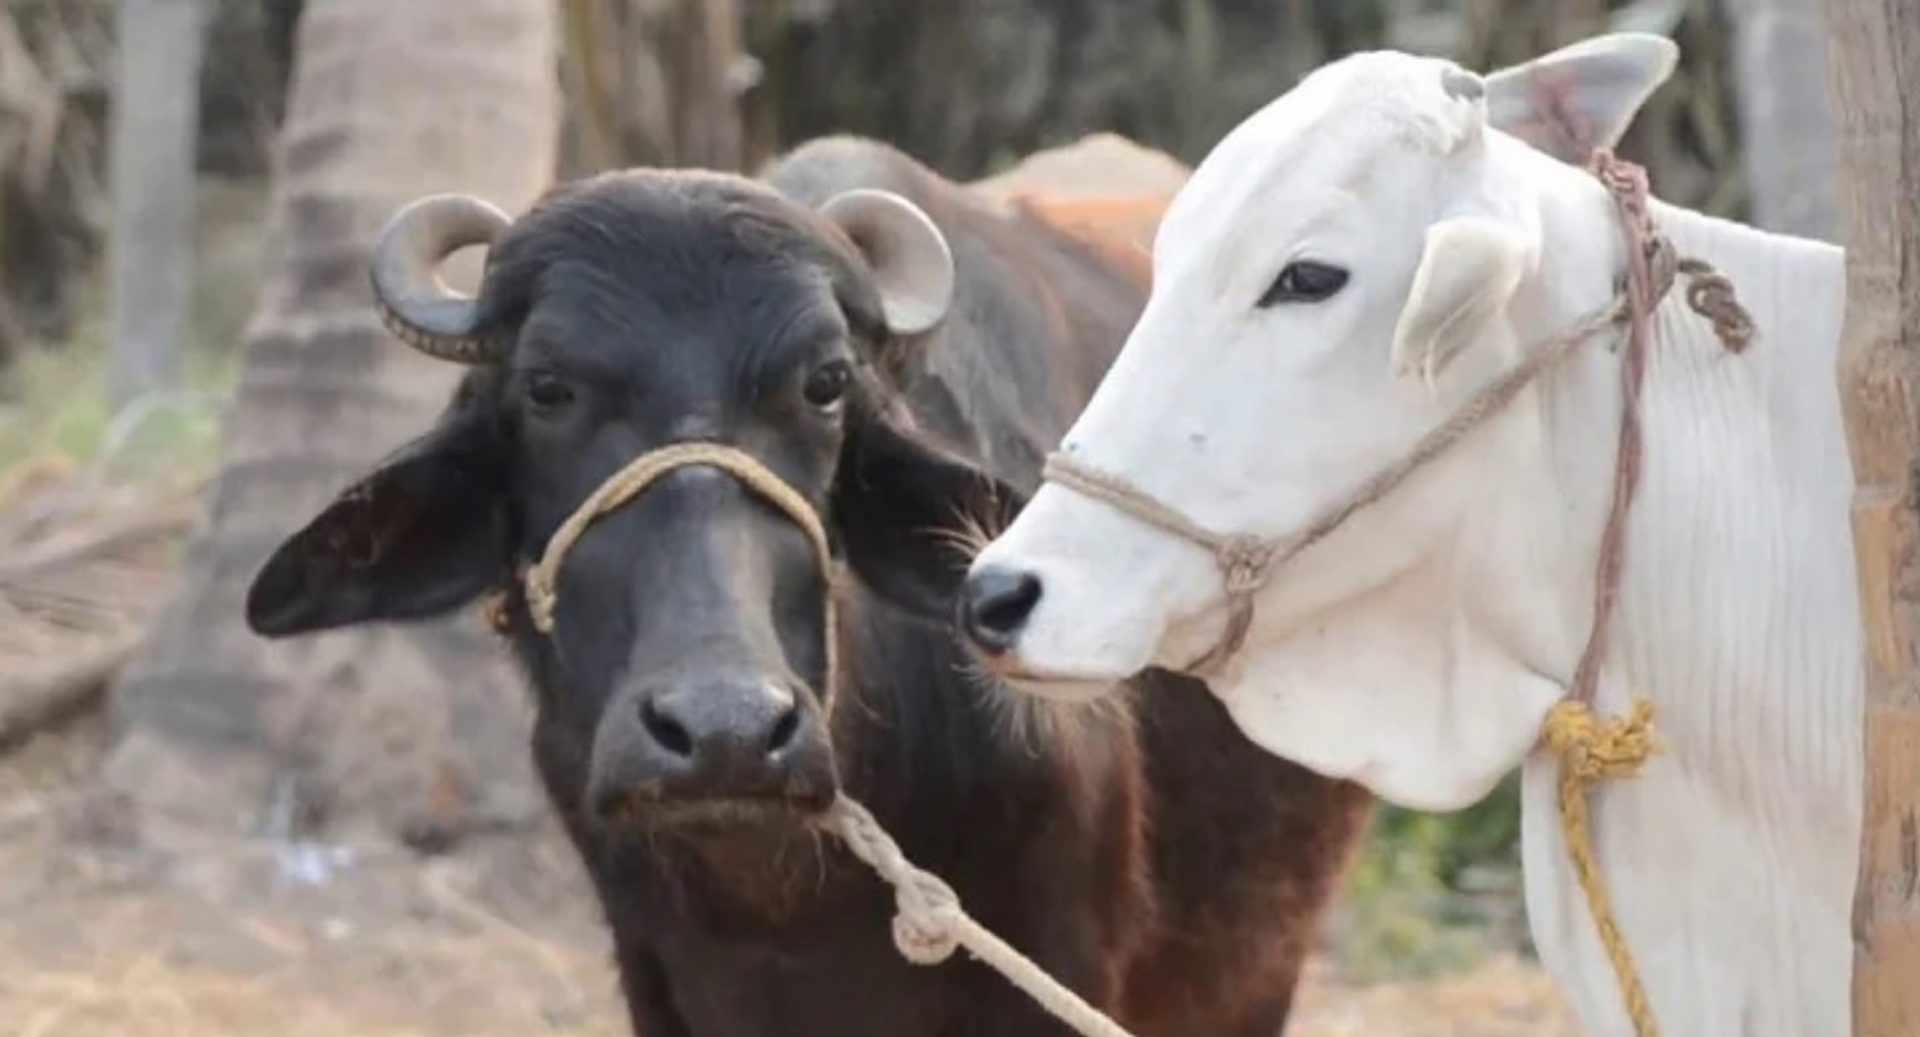 दुधाळ जनावराच्या खरेदी किंमतीत वाढ; गाईसाठी ७० हजार रुपये, म्हशीसाठी ८० हजार रुपये